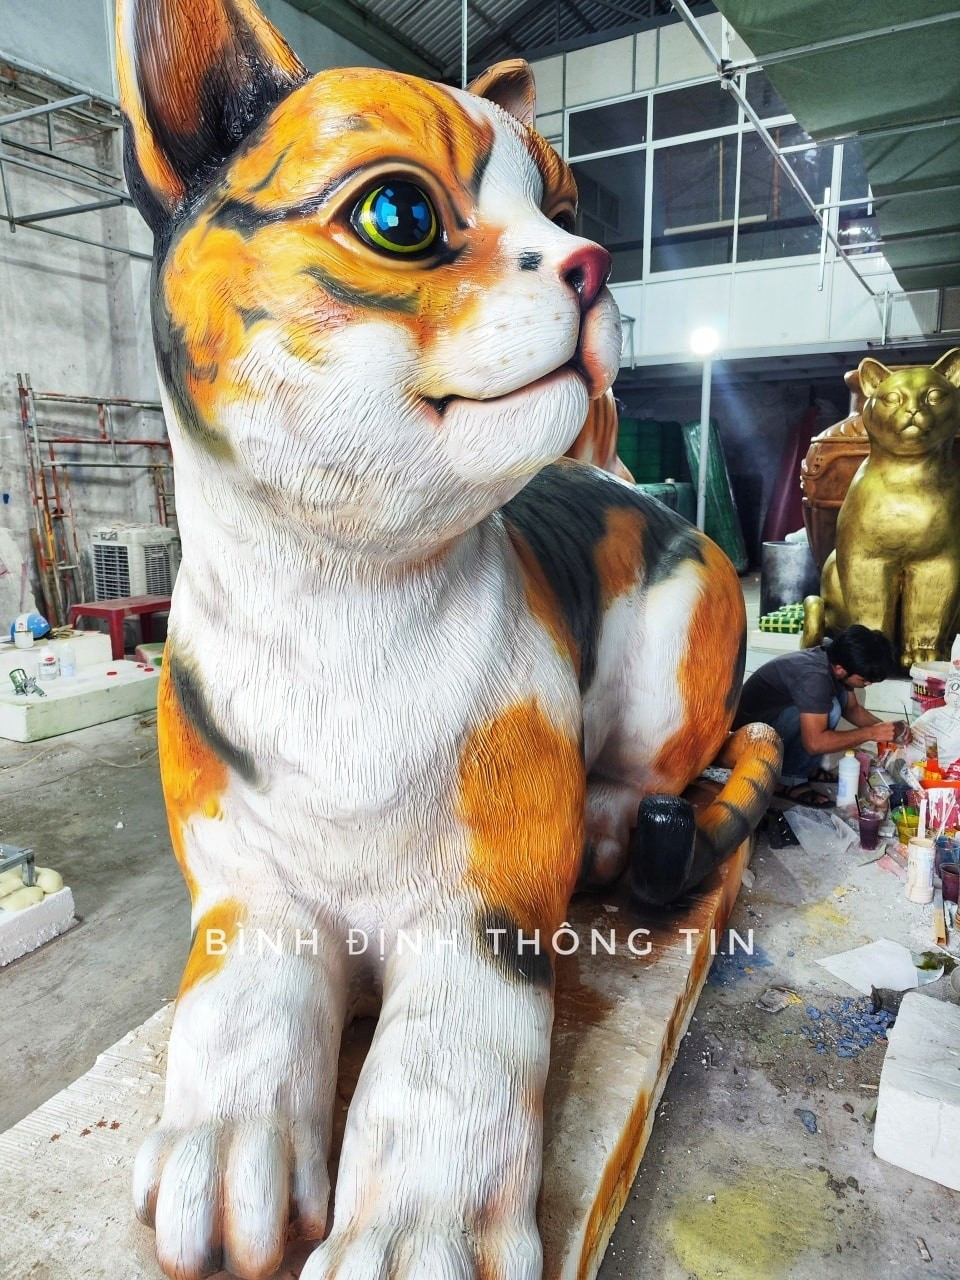 Linh vật mèo nhìn hài hước: Có thật mèo máy Doreamon khổng lồ ở Vũng Tàu? ảnh 7